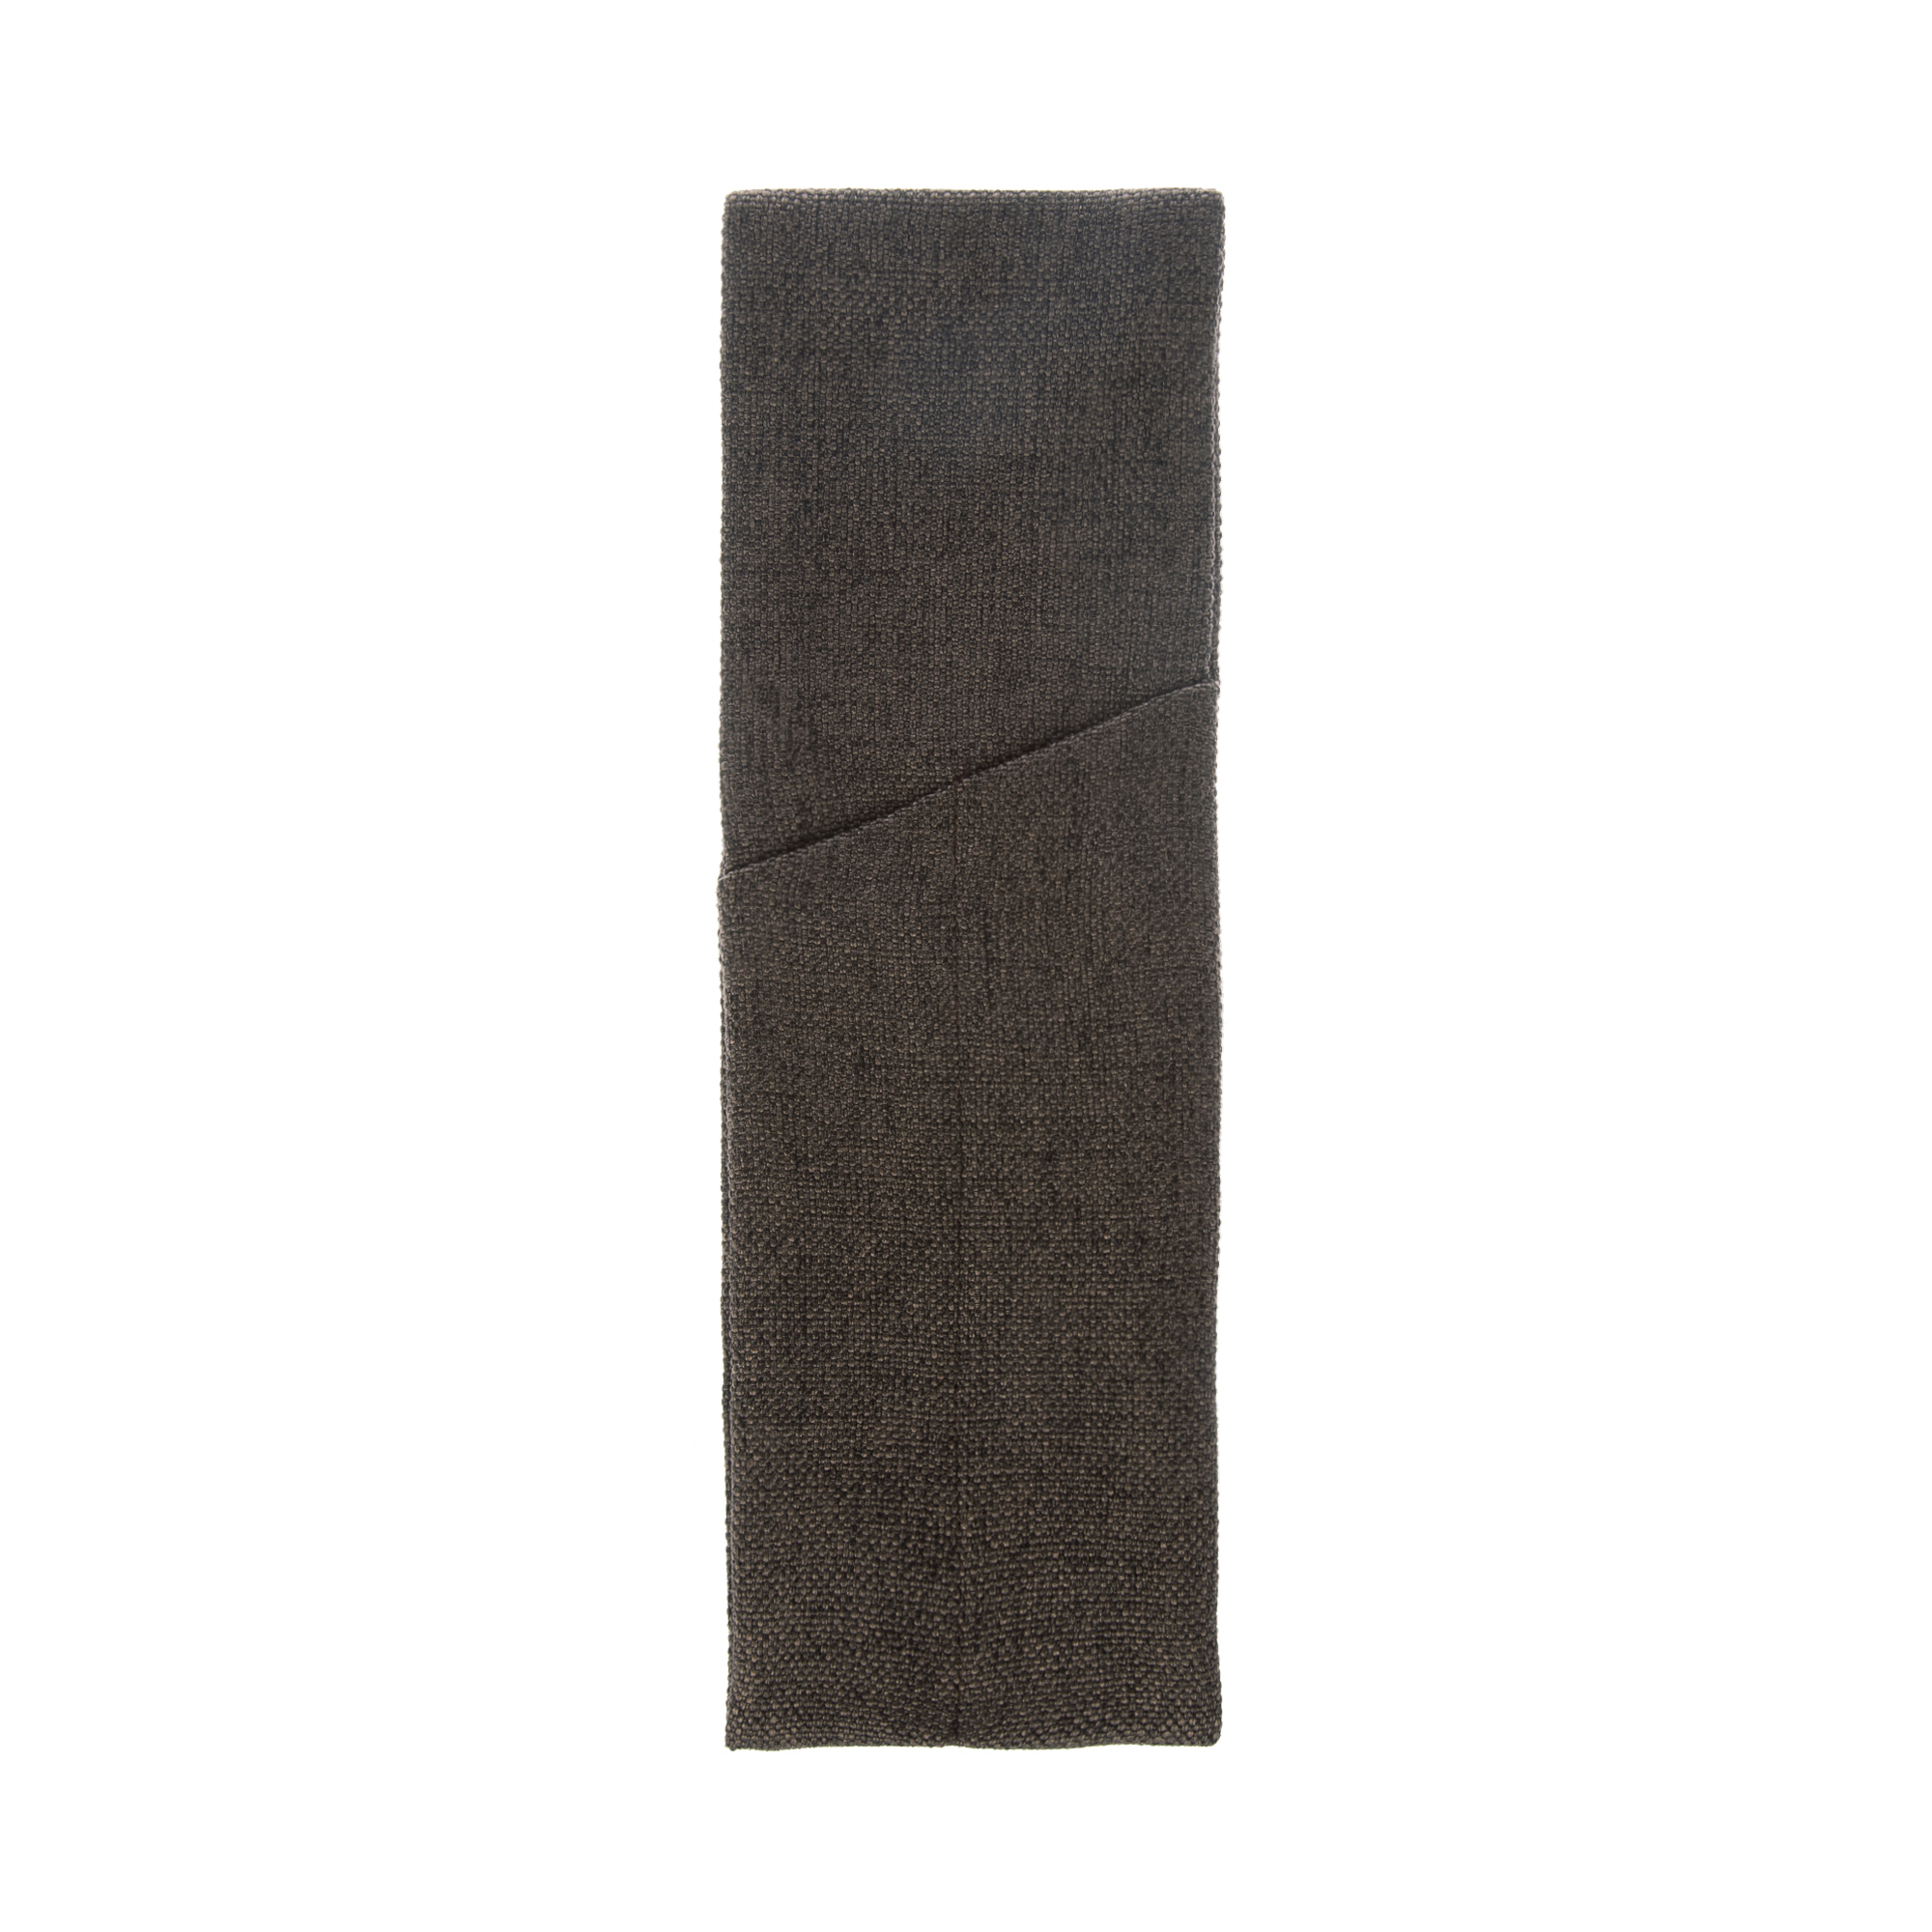 Куверт рогожка коричневый-темный на 2 столовых прибора правый цвет 55